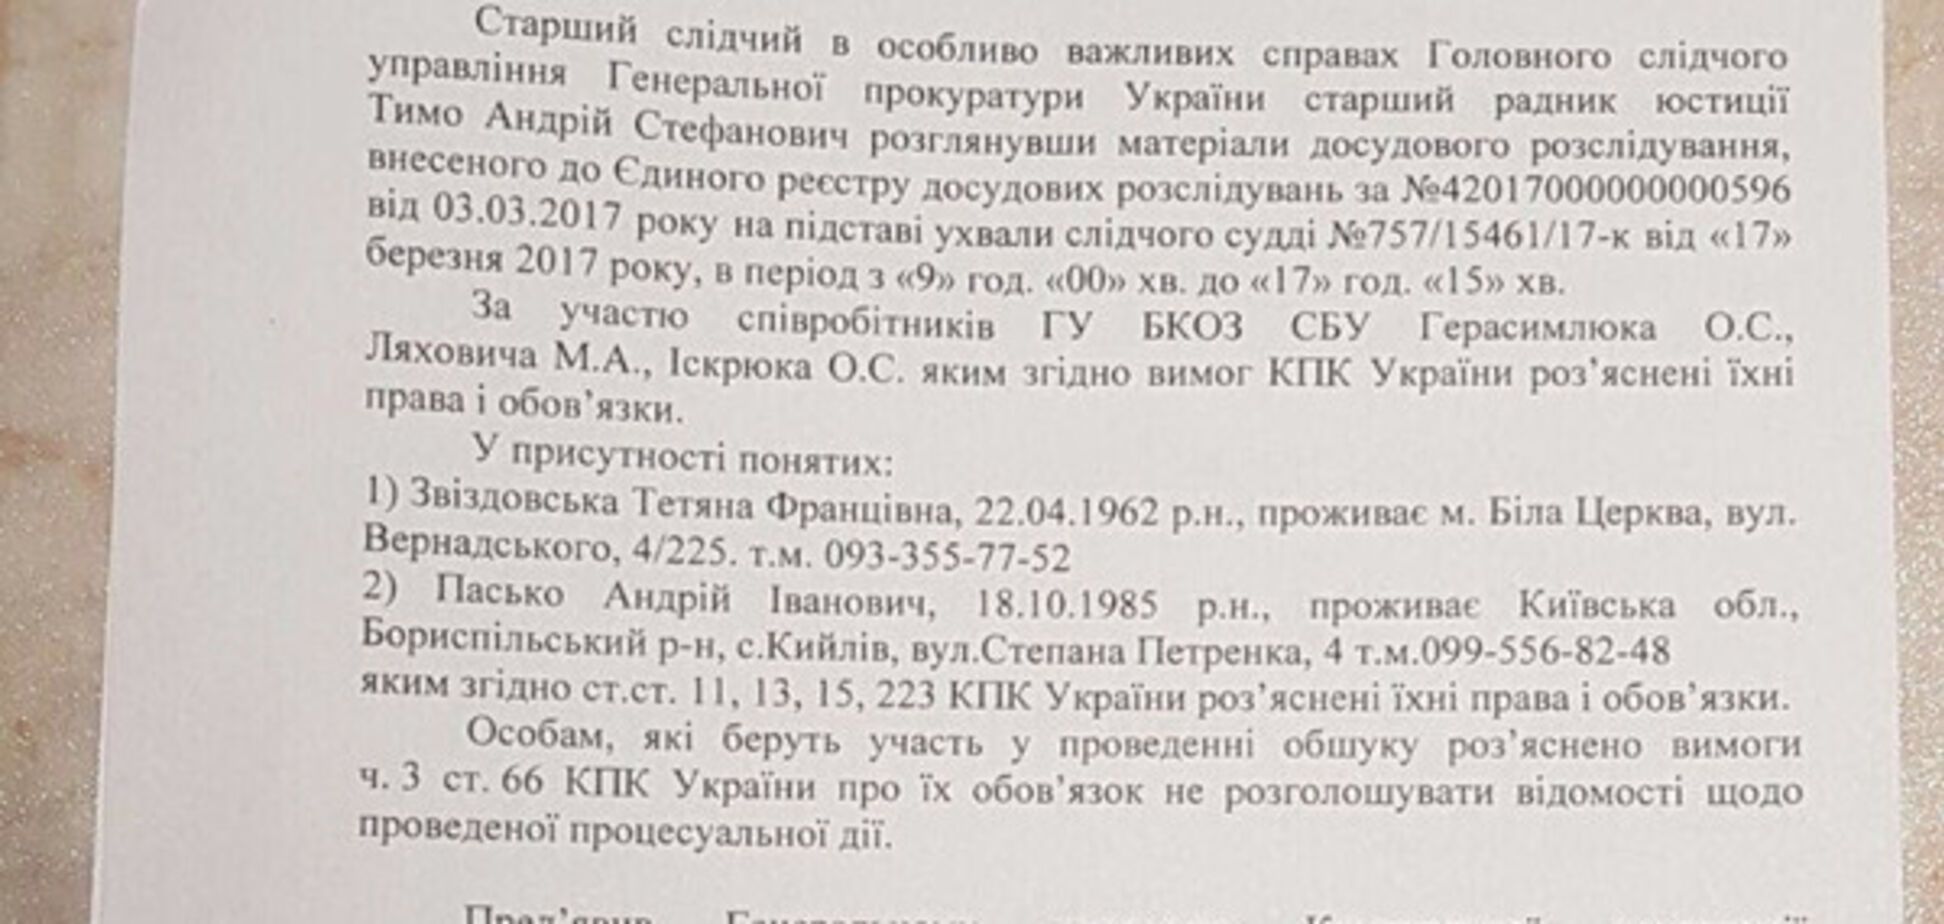 Глава 'Київавтодору' потролив СБУ: опублікований протокол обшуку